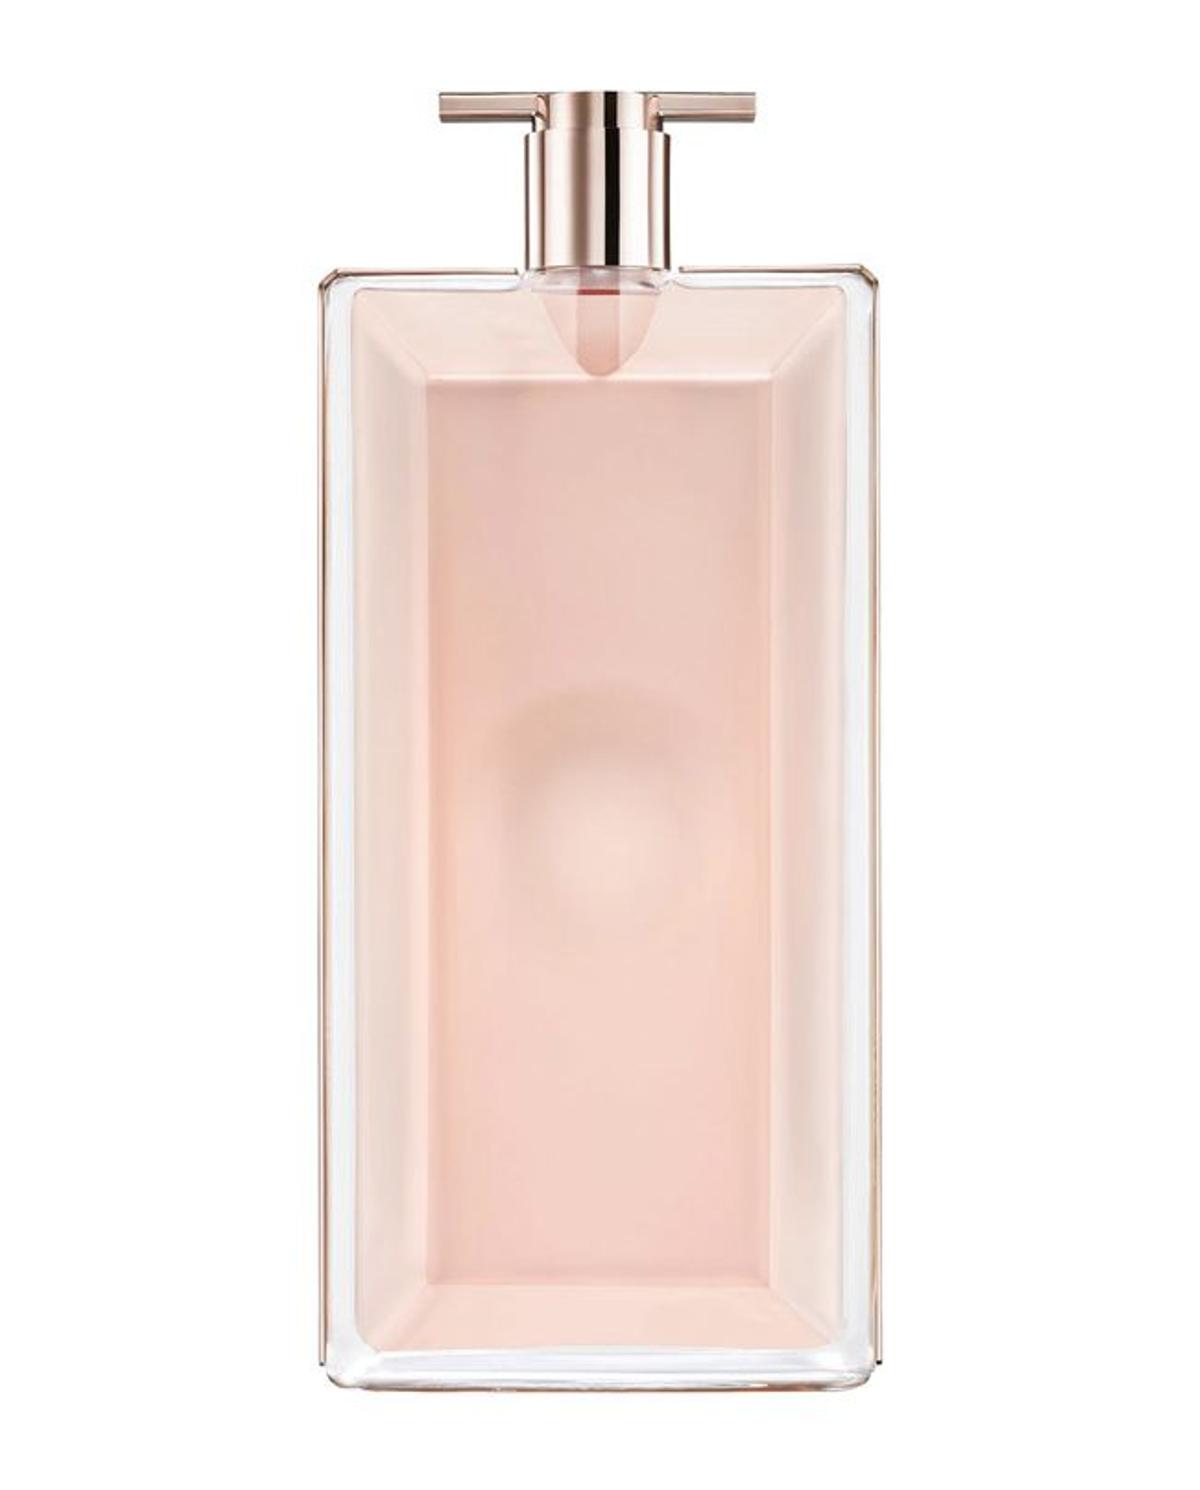 8 mejores perfumes de mujer